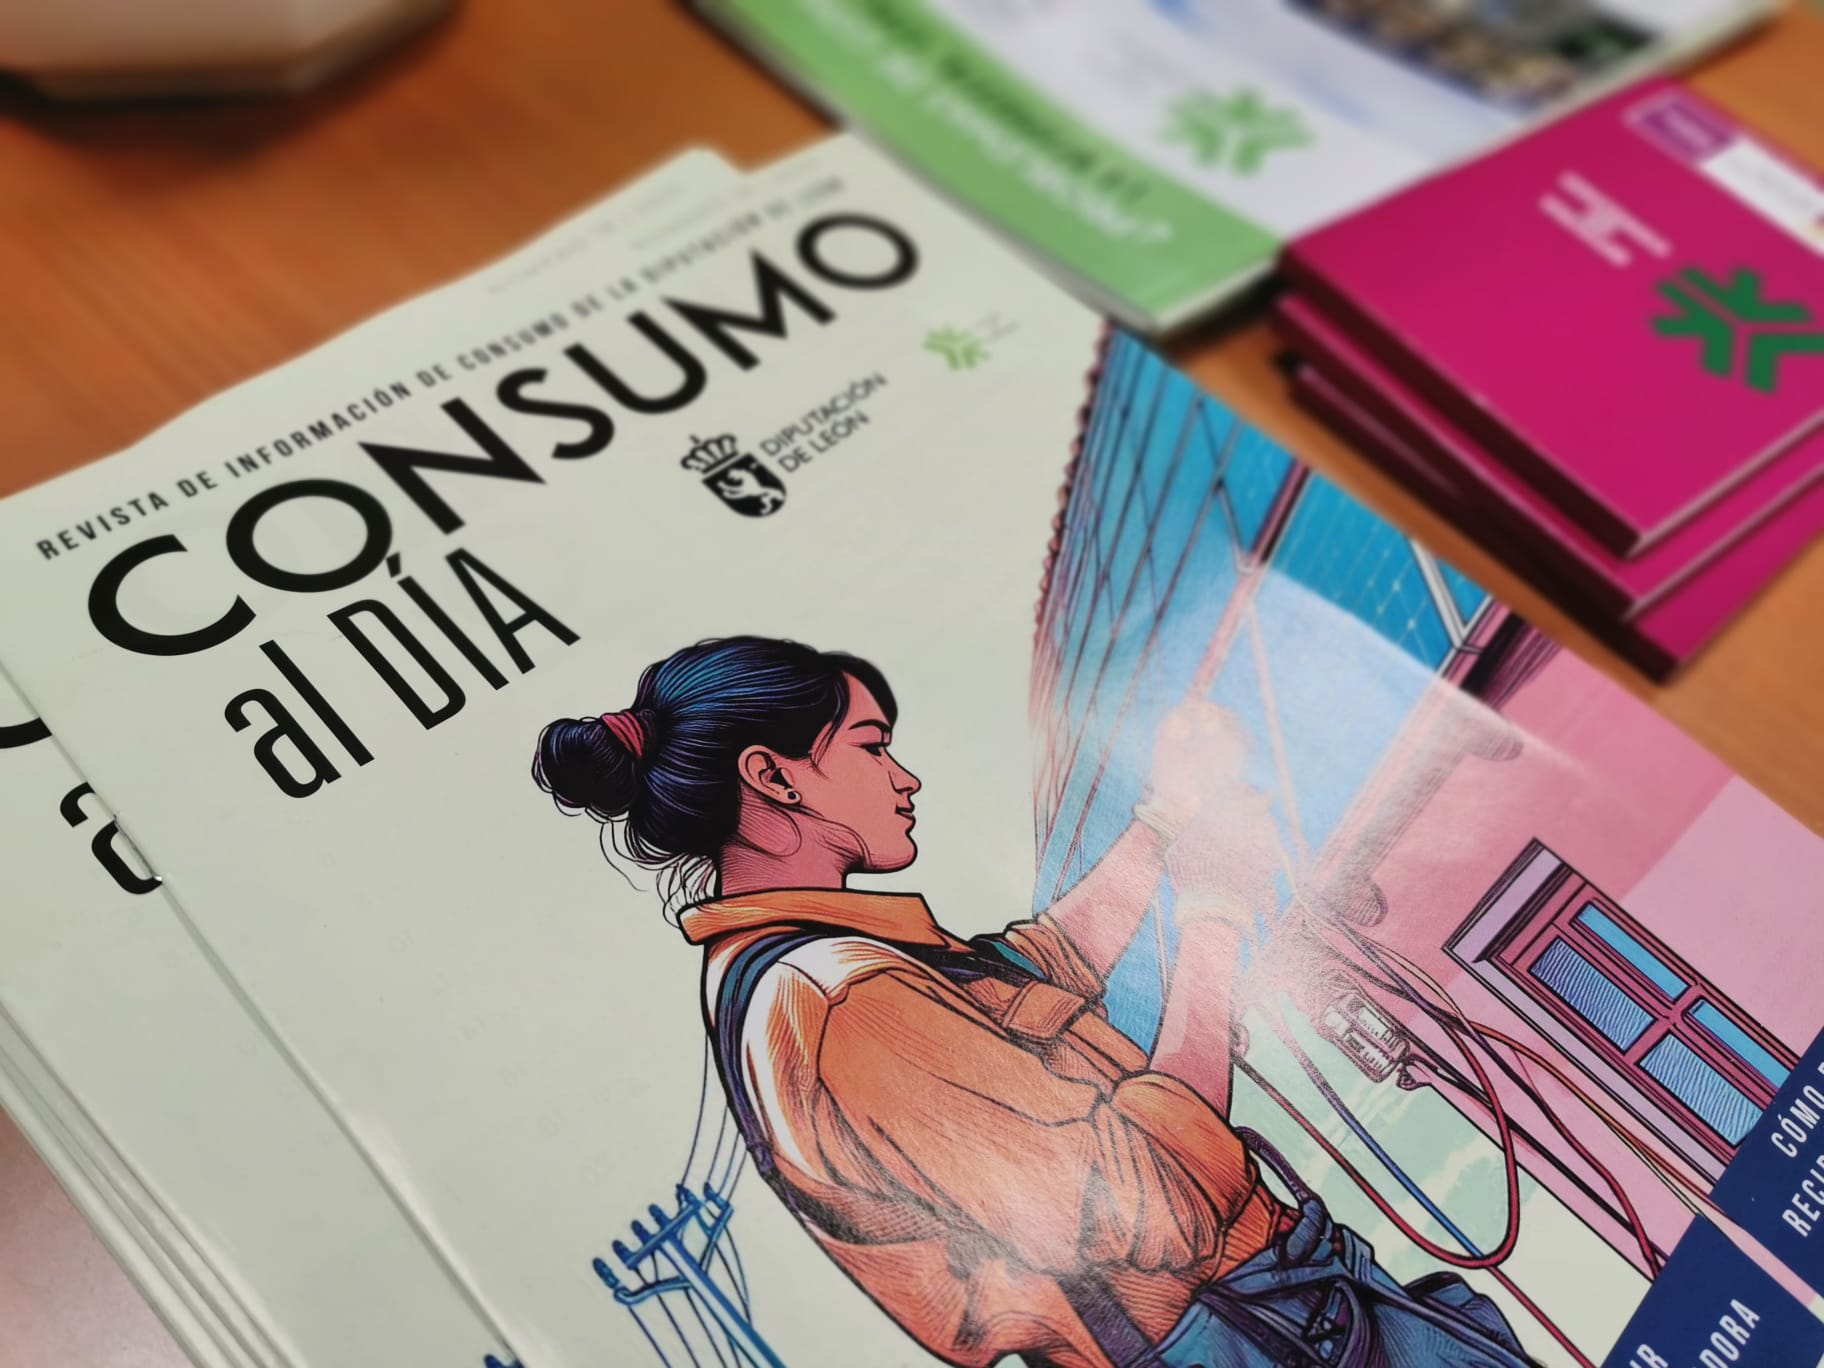 La Diputación distribuye 15.000 ejemplares de ‘Consumo al día’ en todos los municipios de la provincia 1